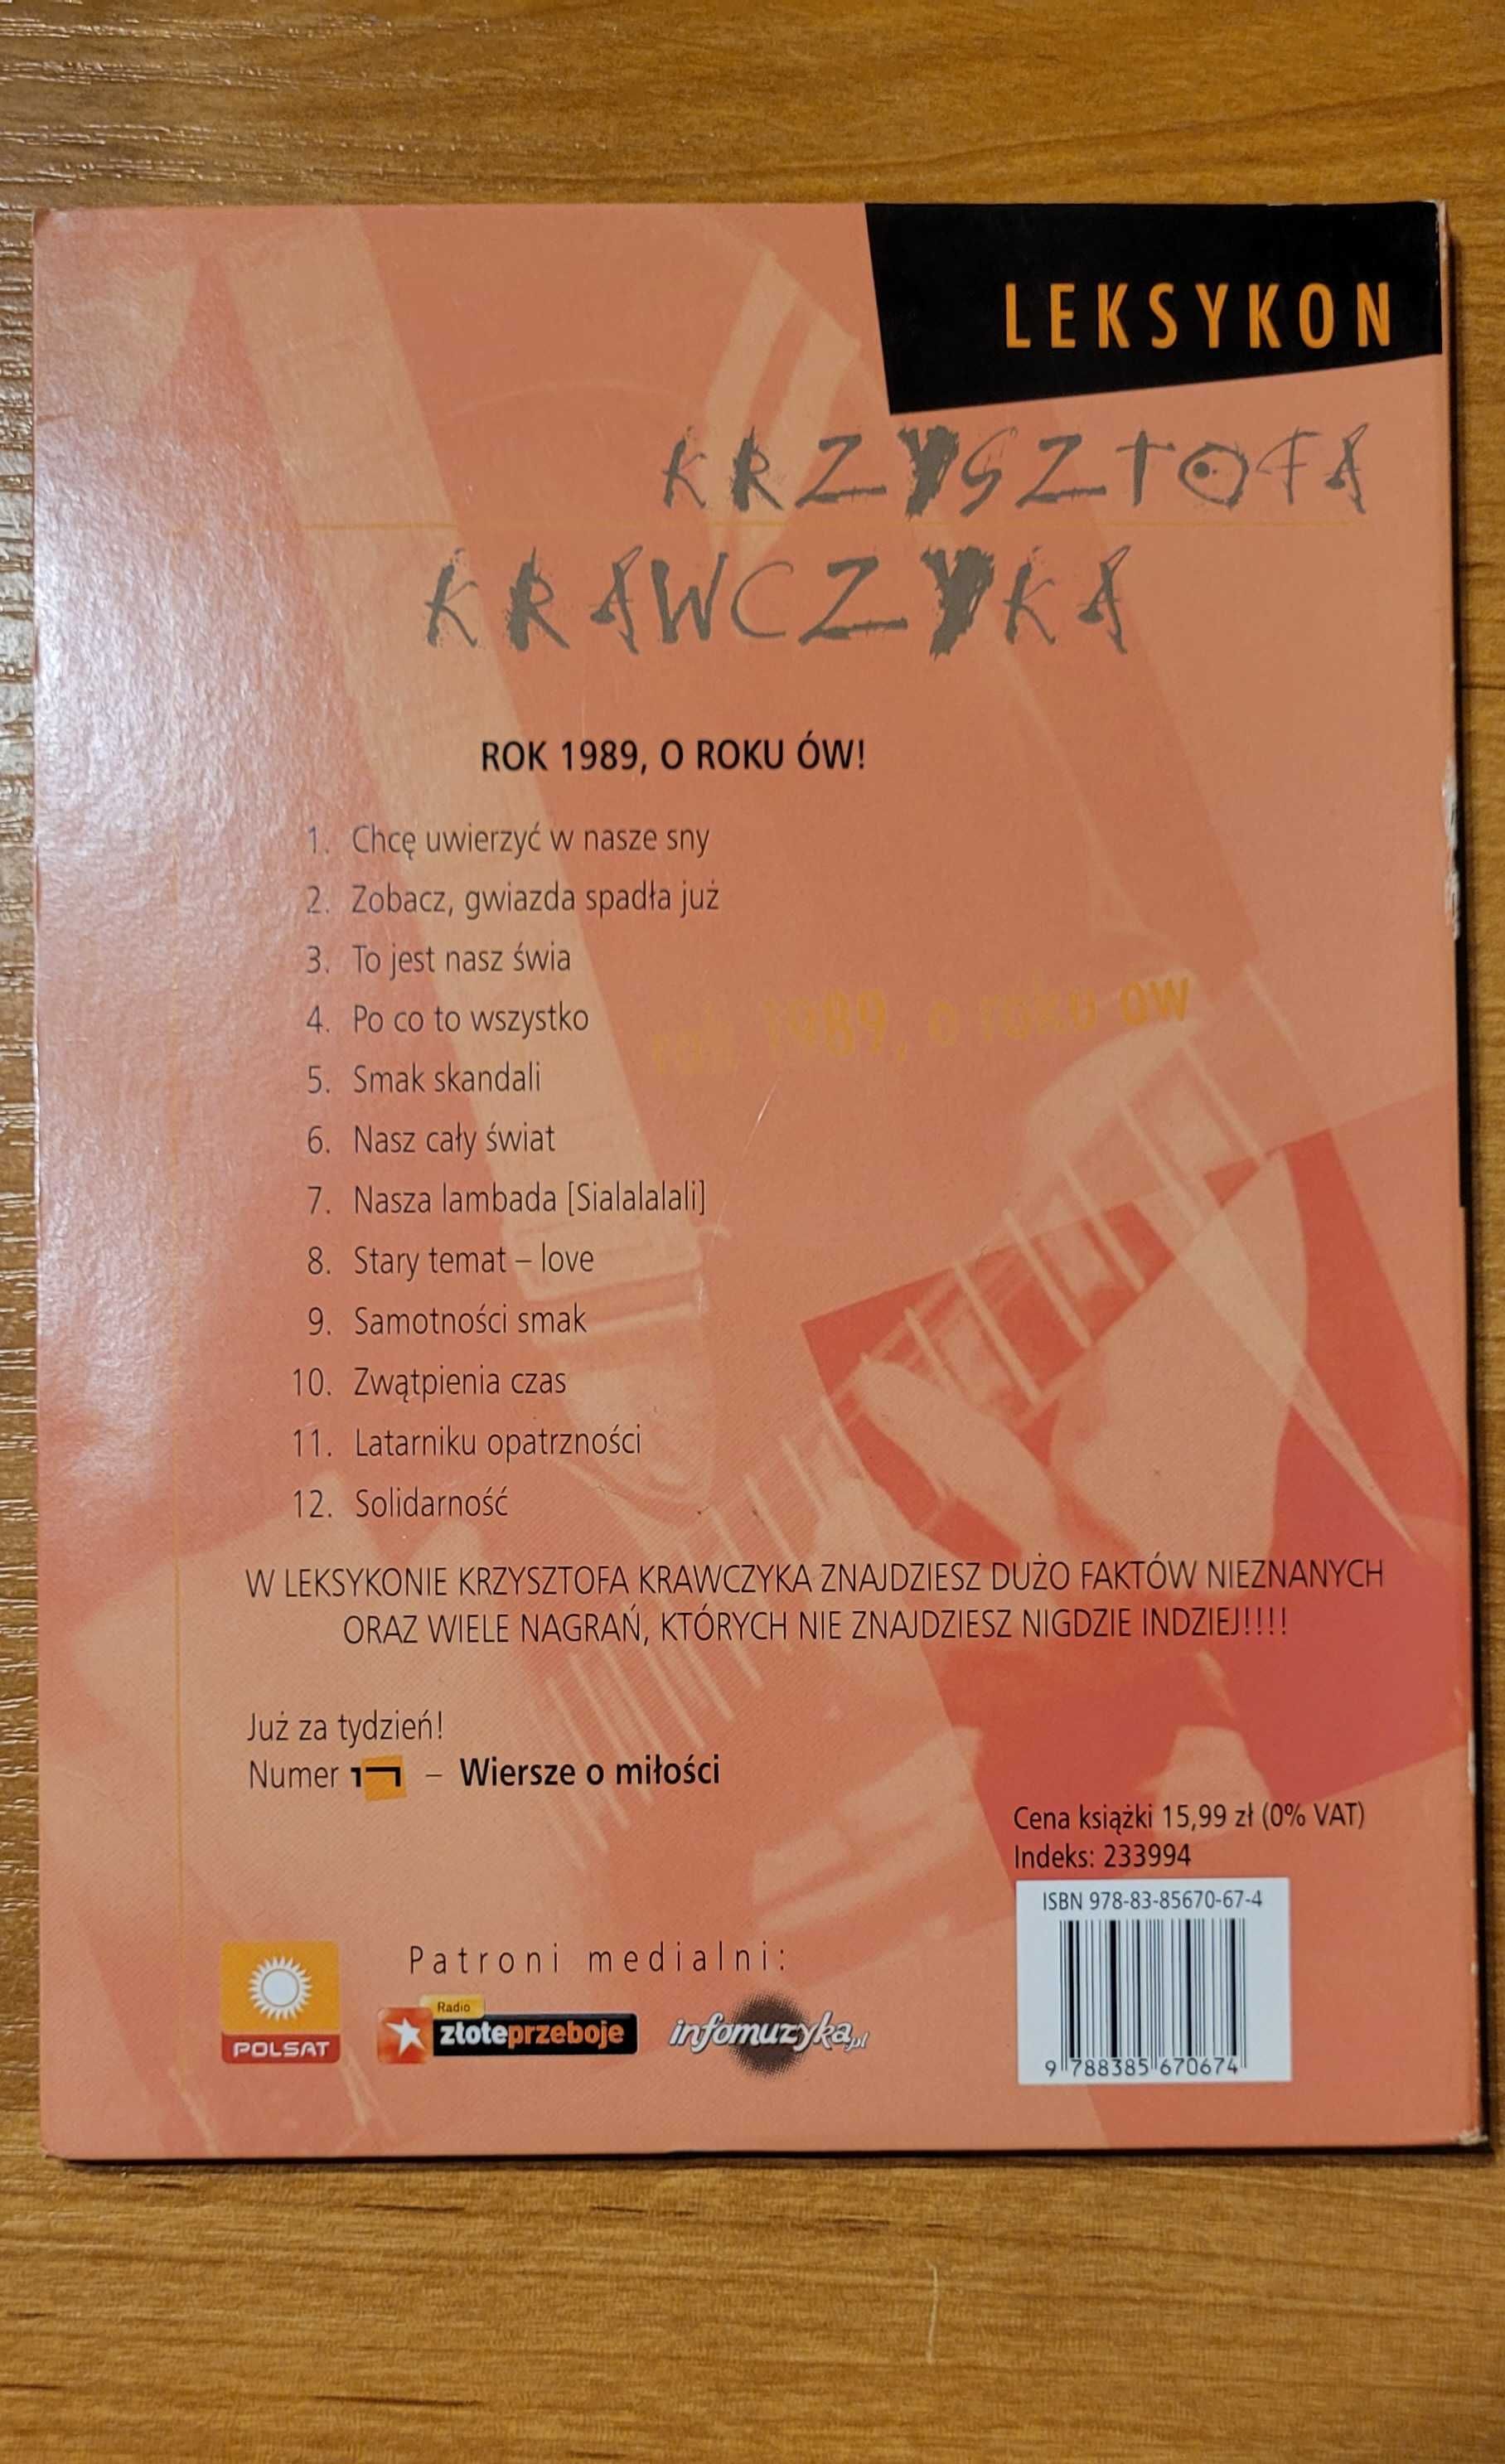 Plyta Cd z ksiazka Krzysztofa Krawczyka - Rok 1989, o roku ow!